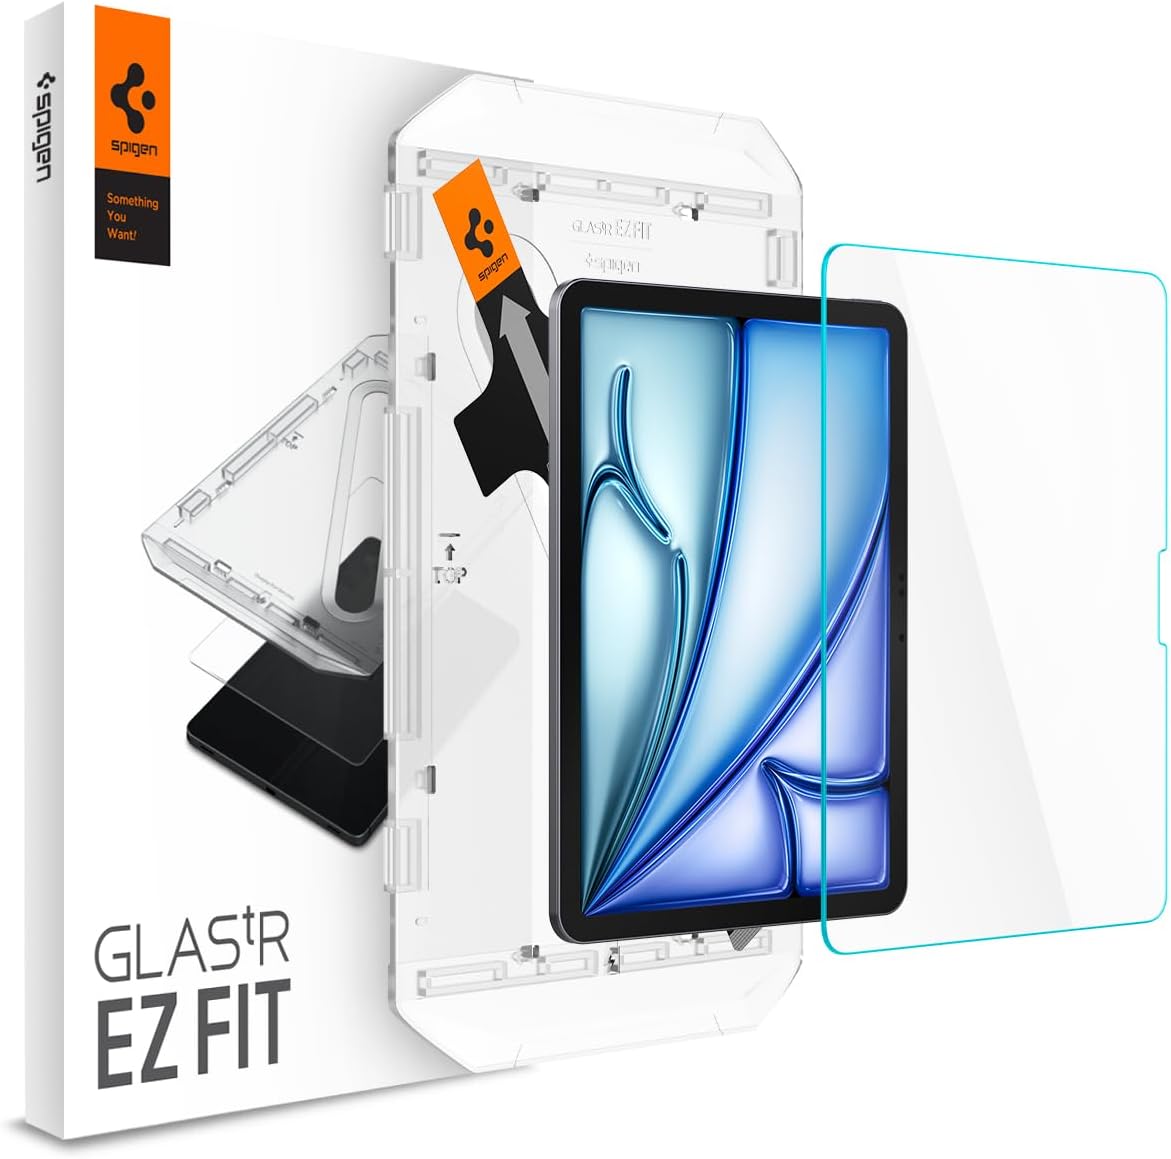 Protecto de Pantalla Spigen GlasTR EZ Fit iPad Air 11 M2